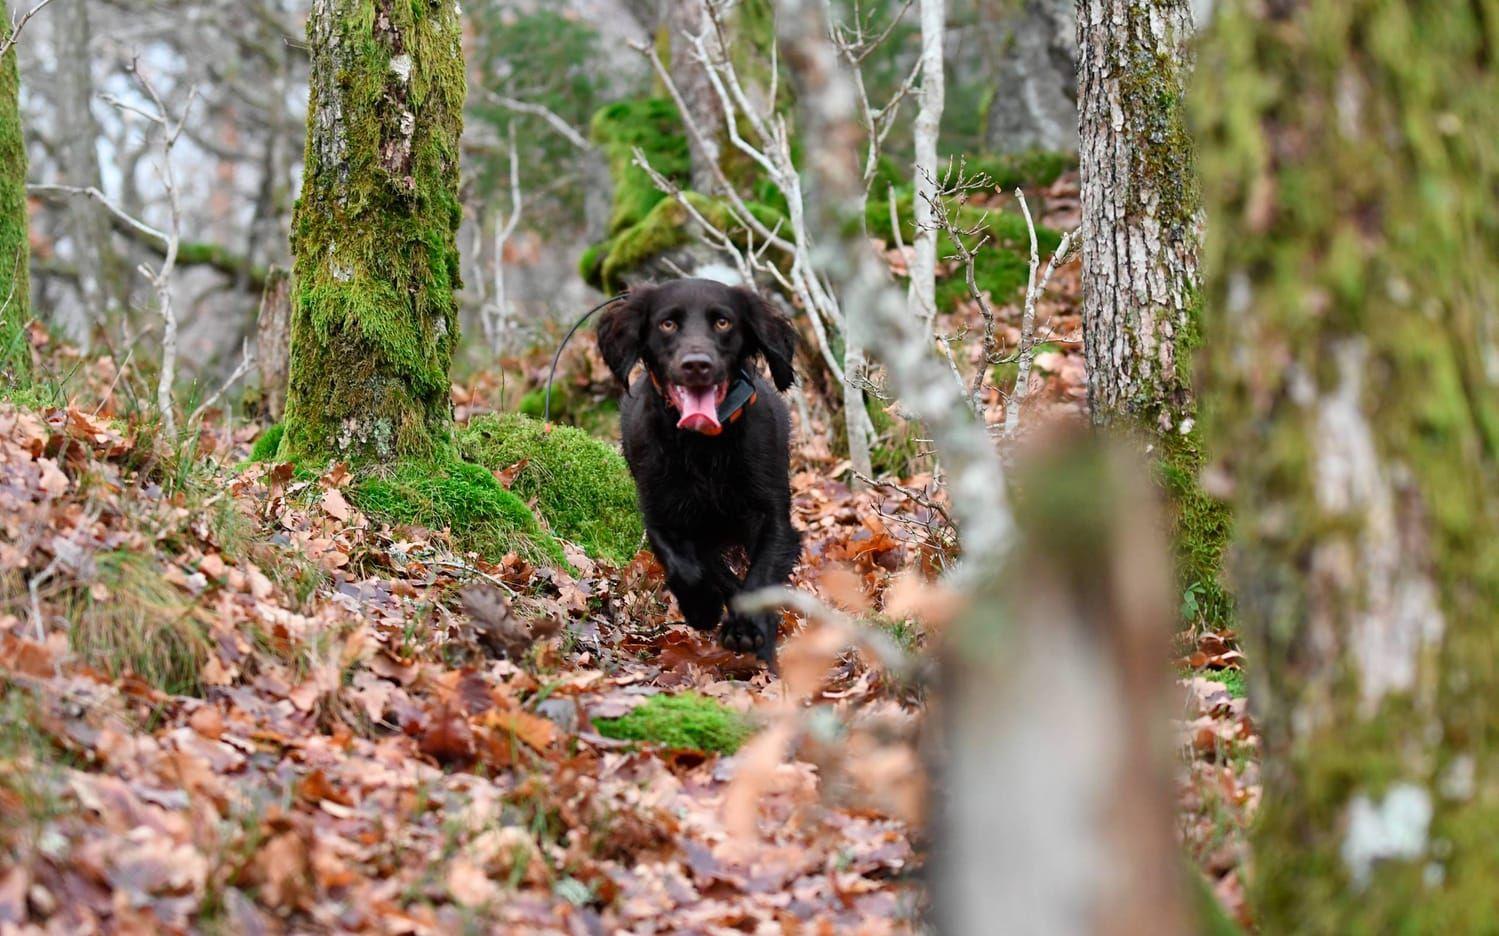 Med obeskrivlig glädje i sitt rätta element - på jakt i skogen - visar wachtelhunden Jilla vad hon uppskattar mest av allt. Insänt av Björn Martinsson.